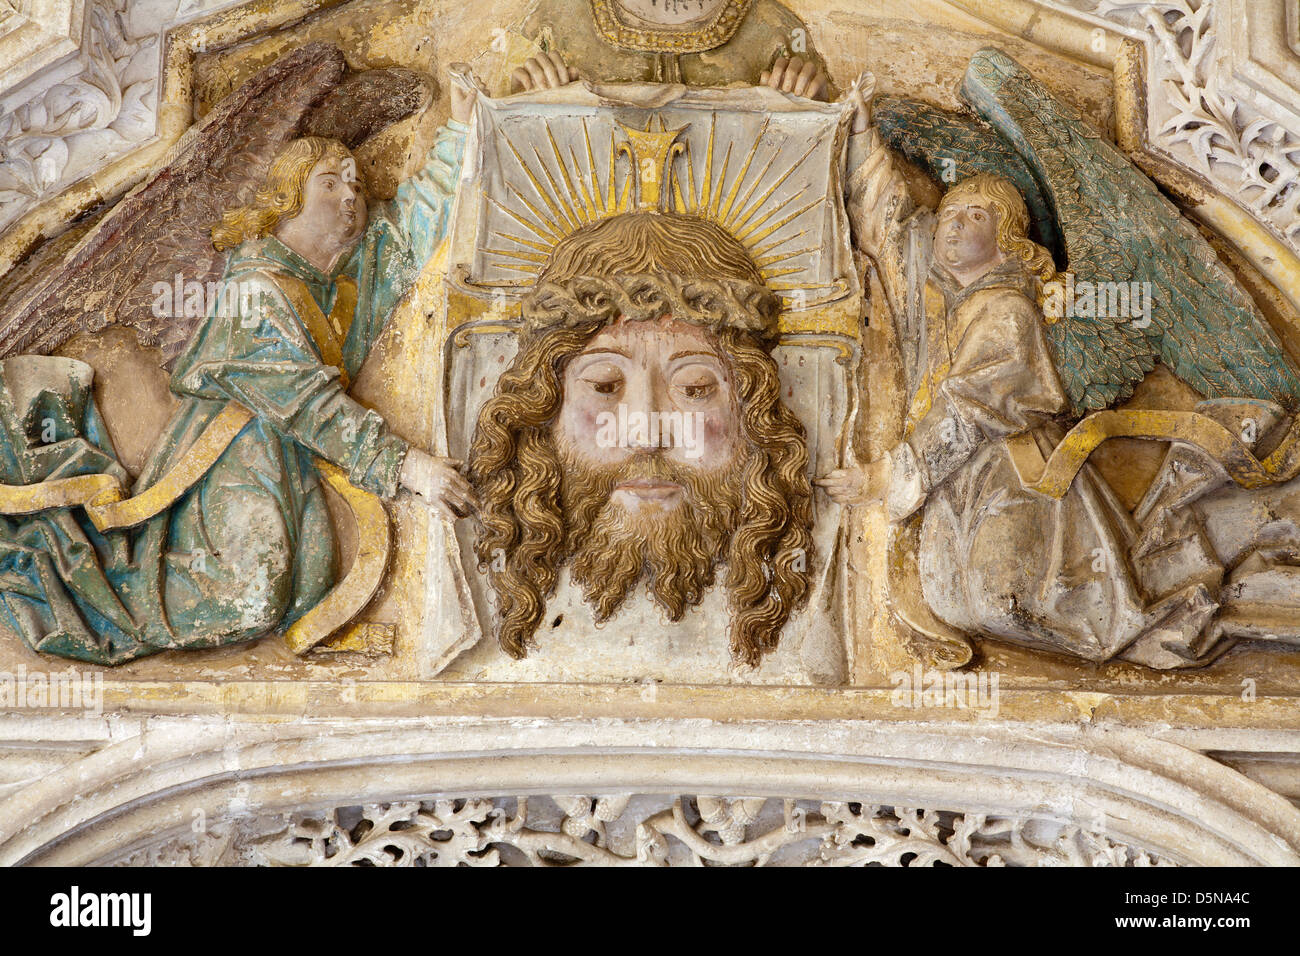 TOLEDO - März 8: Detail vom Portal des gotischen Atrium des Monasterio San Juan de Los Reyes oder Kloster des Heiligen Johannes des Königs Stockfoto